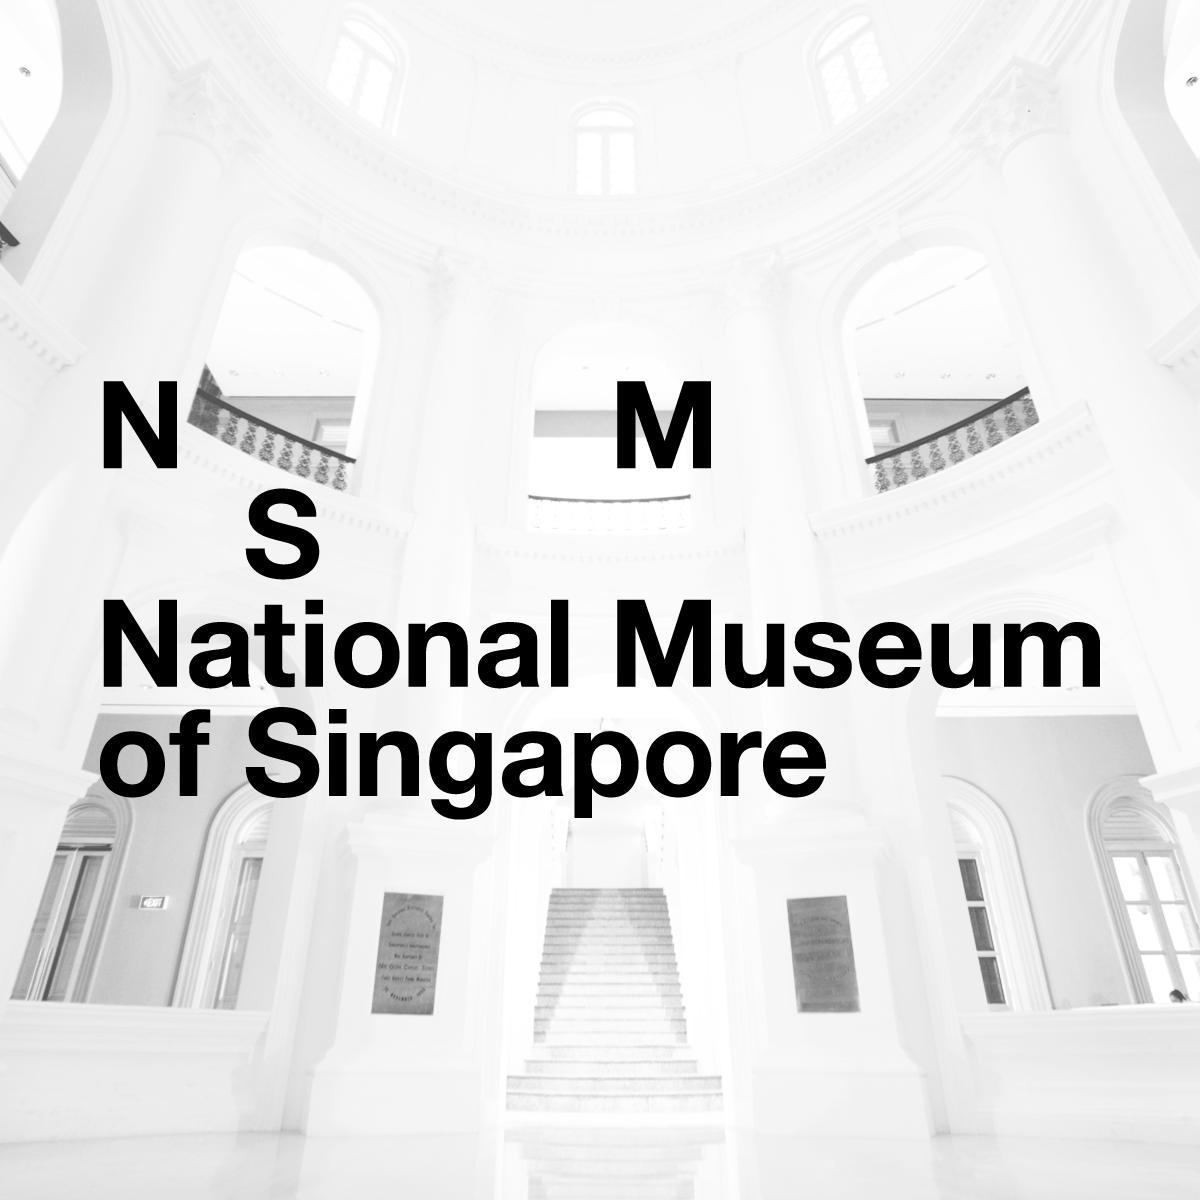 Anne-Cécile Worms, co-fondatrice de ArtJaws, invitée par le Musée National de Singapour pour une série de conférences